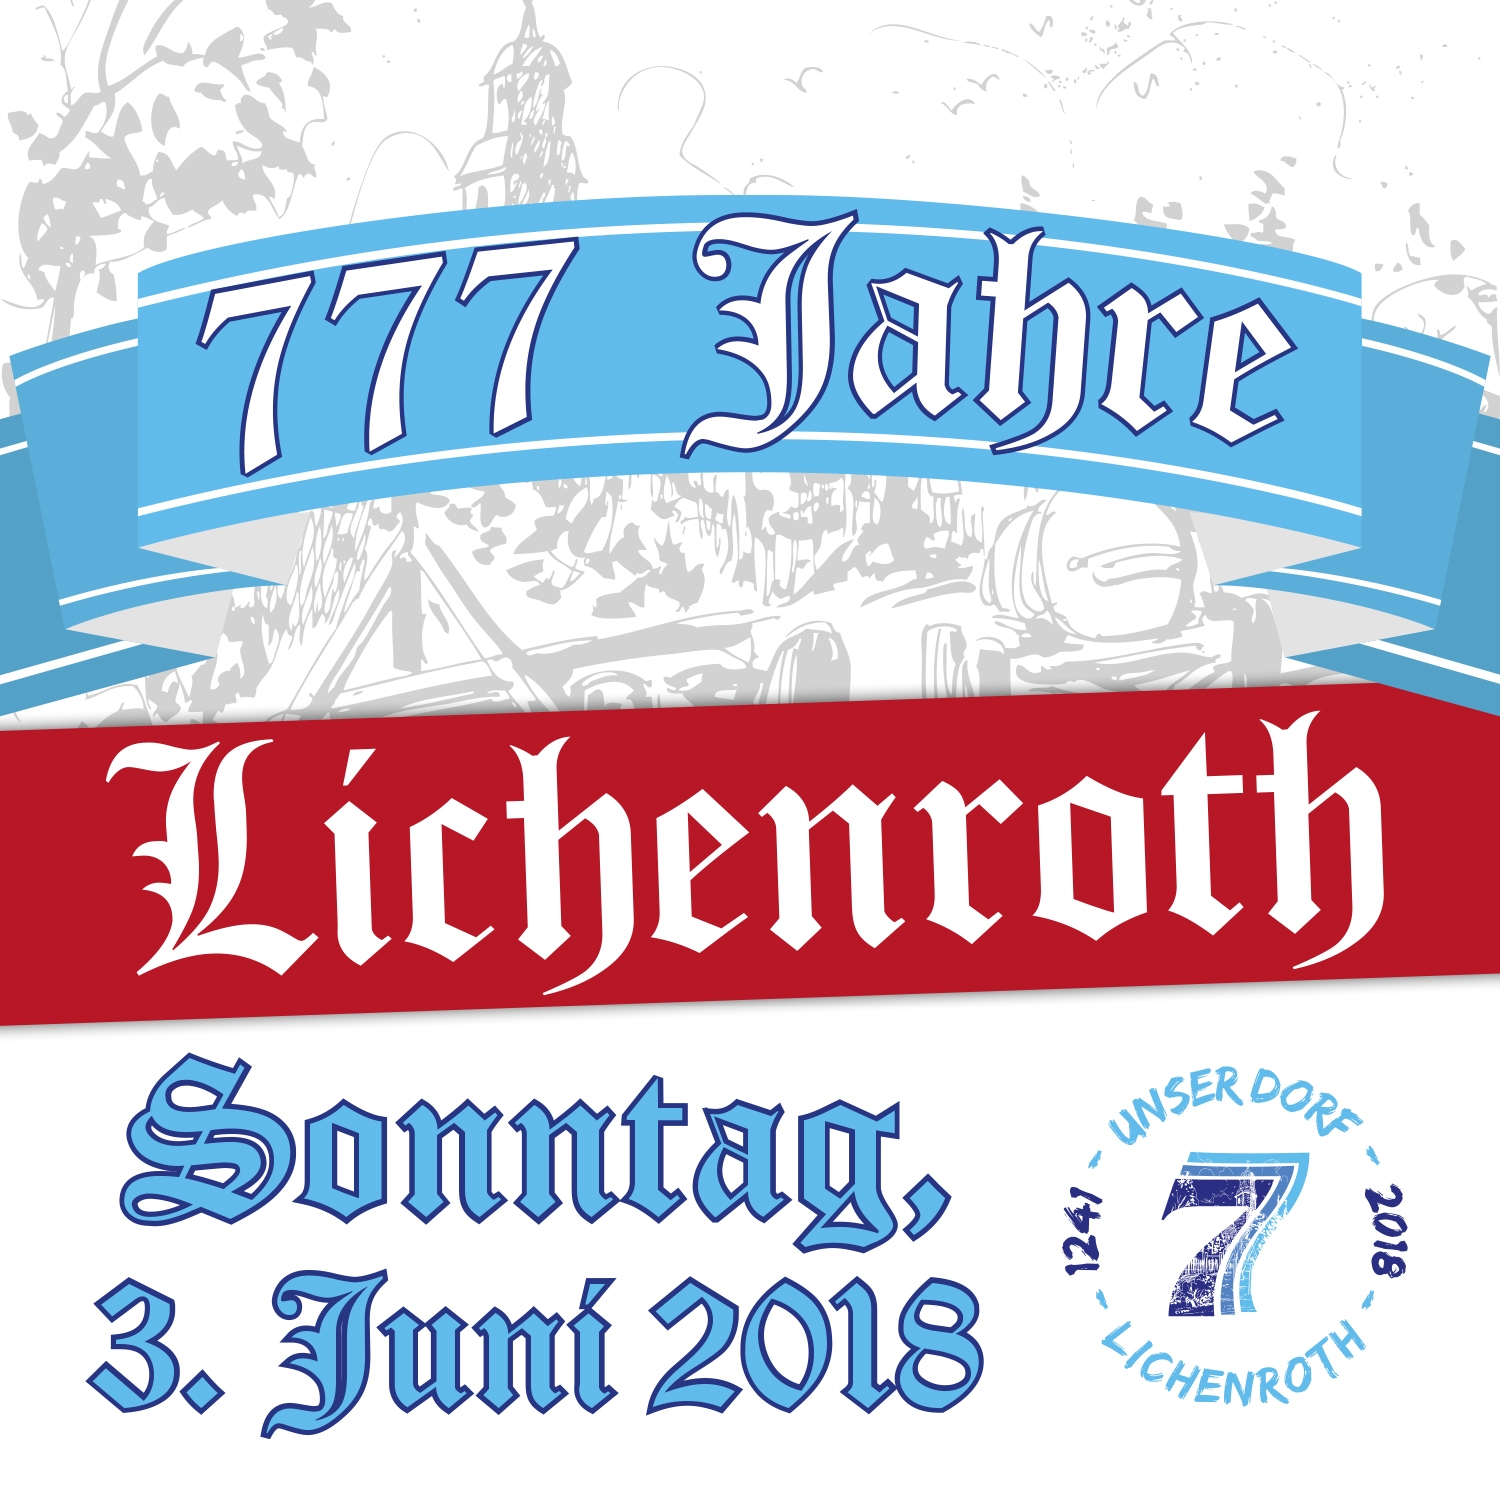 Dorfjubiläum 777 Jahre Lichenroth